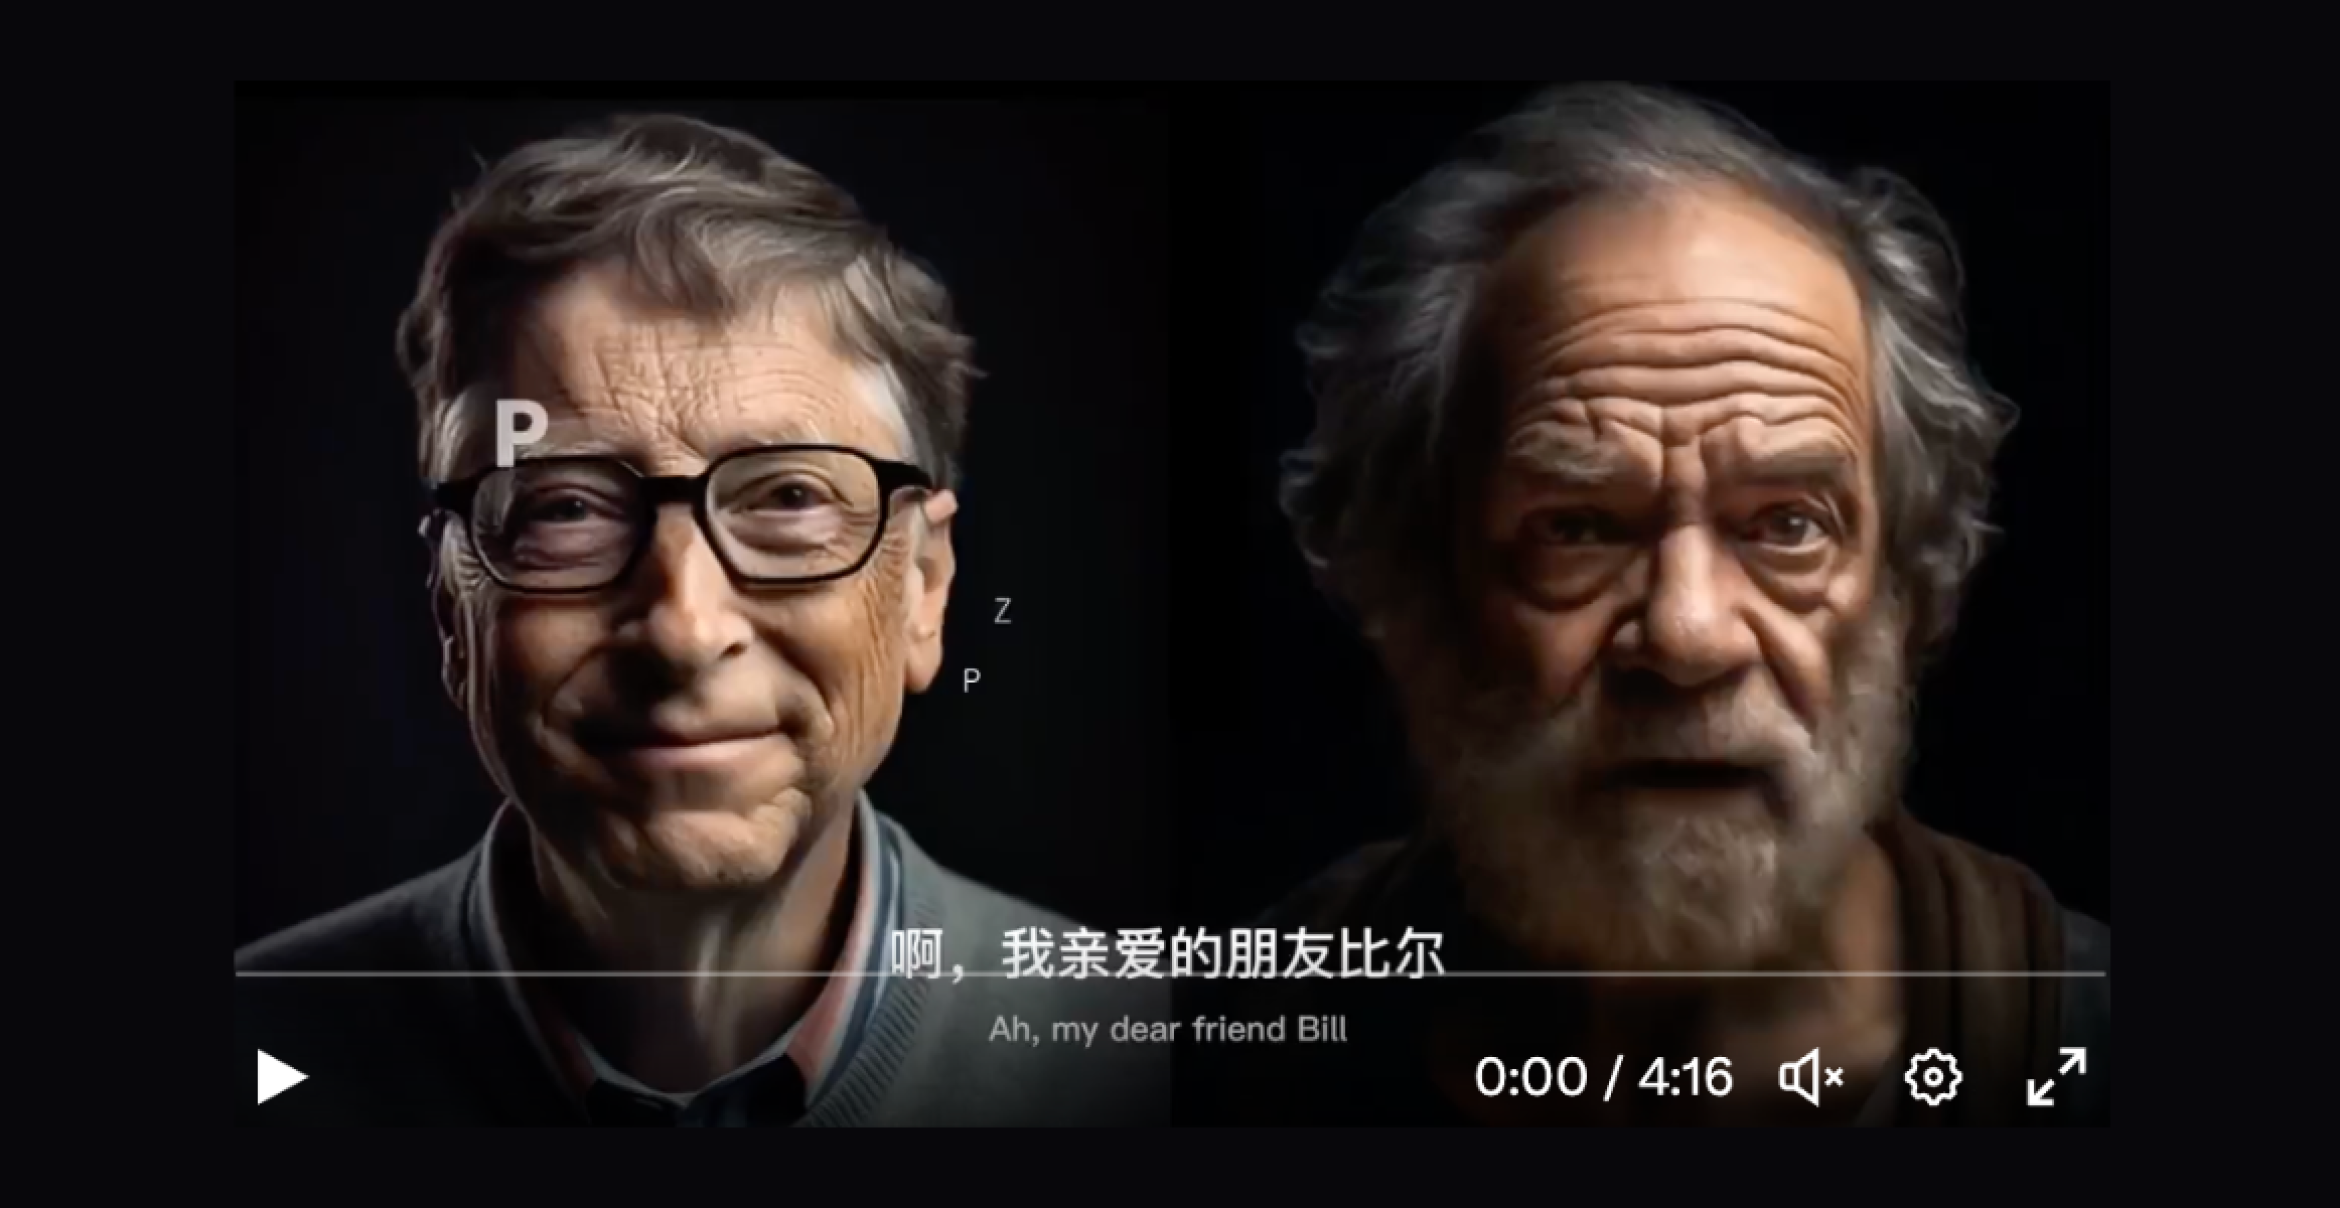 Must-See des Tages: Unterhalten sich Bill Gates und Sokrates über KI